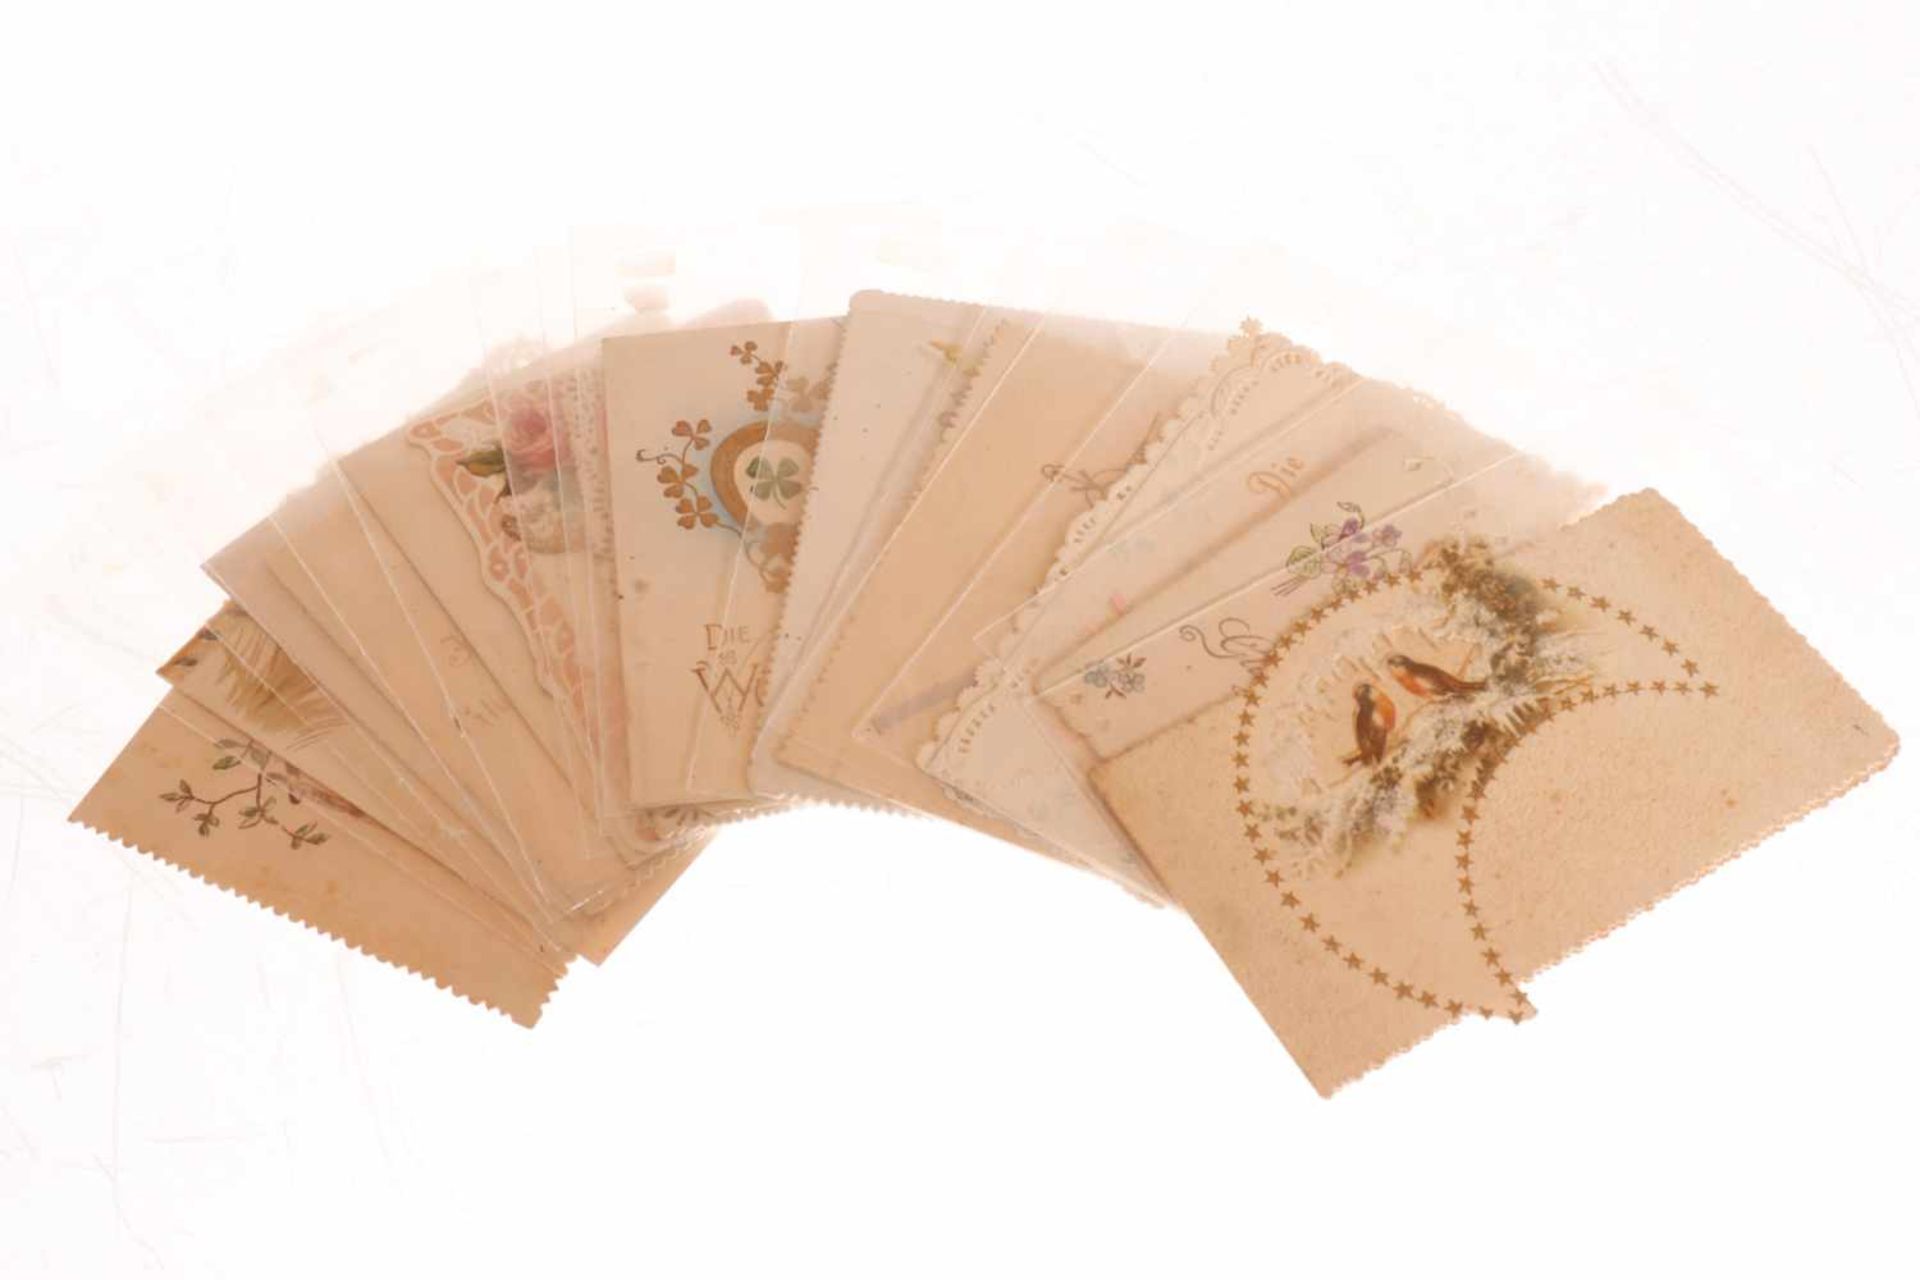 Konv. 15 Glückwunschkarten, um 1900, meist polychromer Prägedruck, tw Stanzspitze, leichte